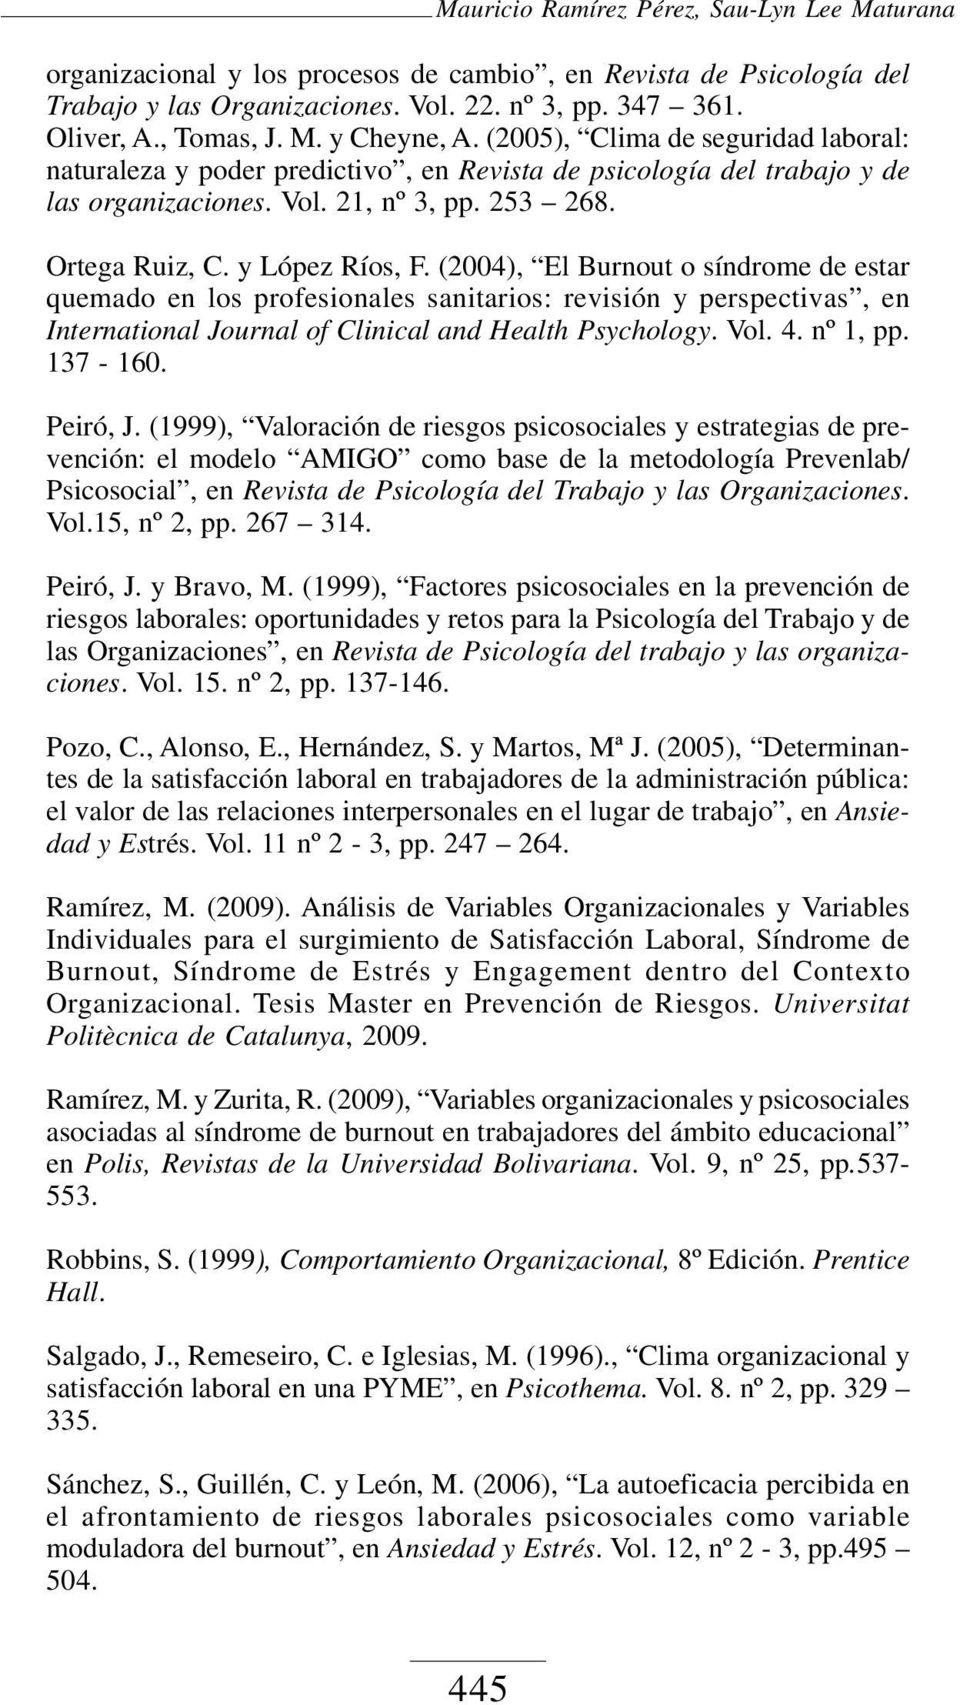 (2004), El Burnout o síndrome de estar quemado en los profesionales sanitarios: revisión y perspectivas, en International Journal of Clinical and Health Psychology. Vol. 4. nº 1, pp. 137-160.